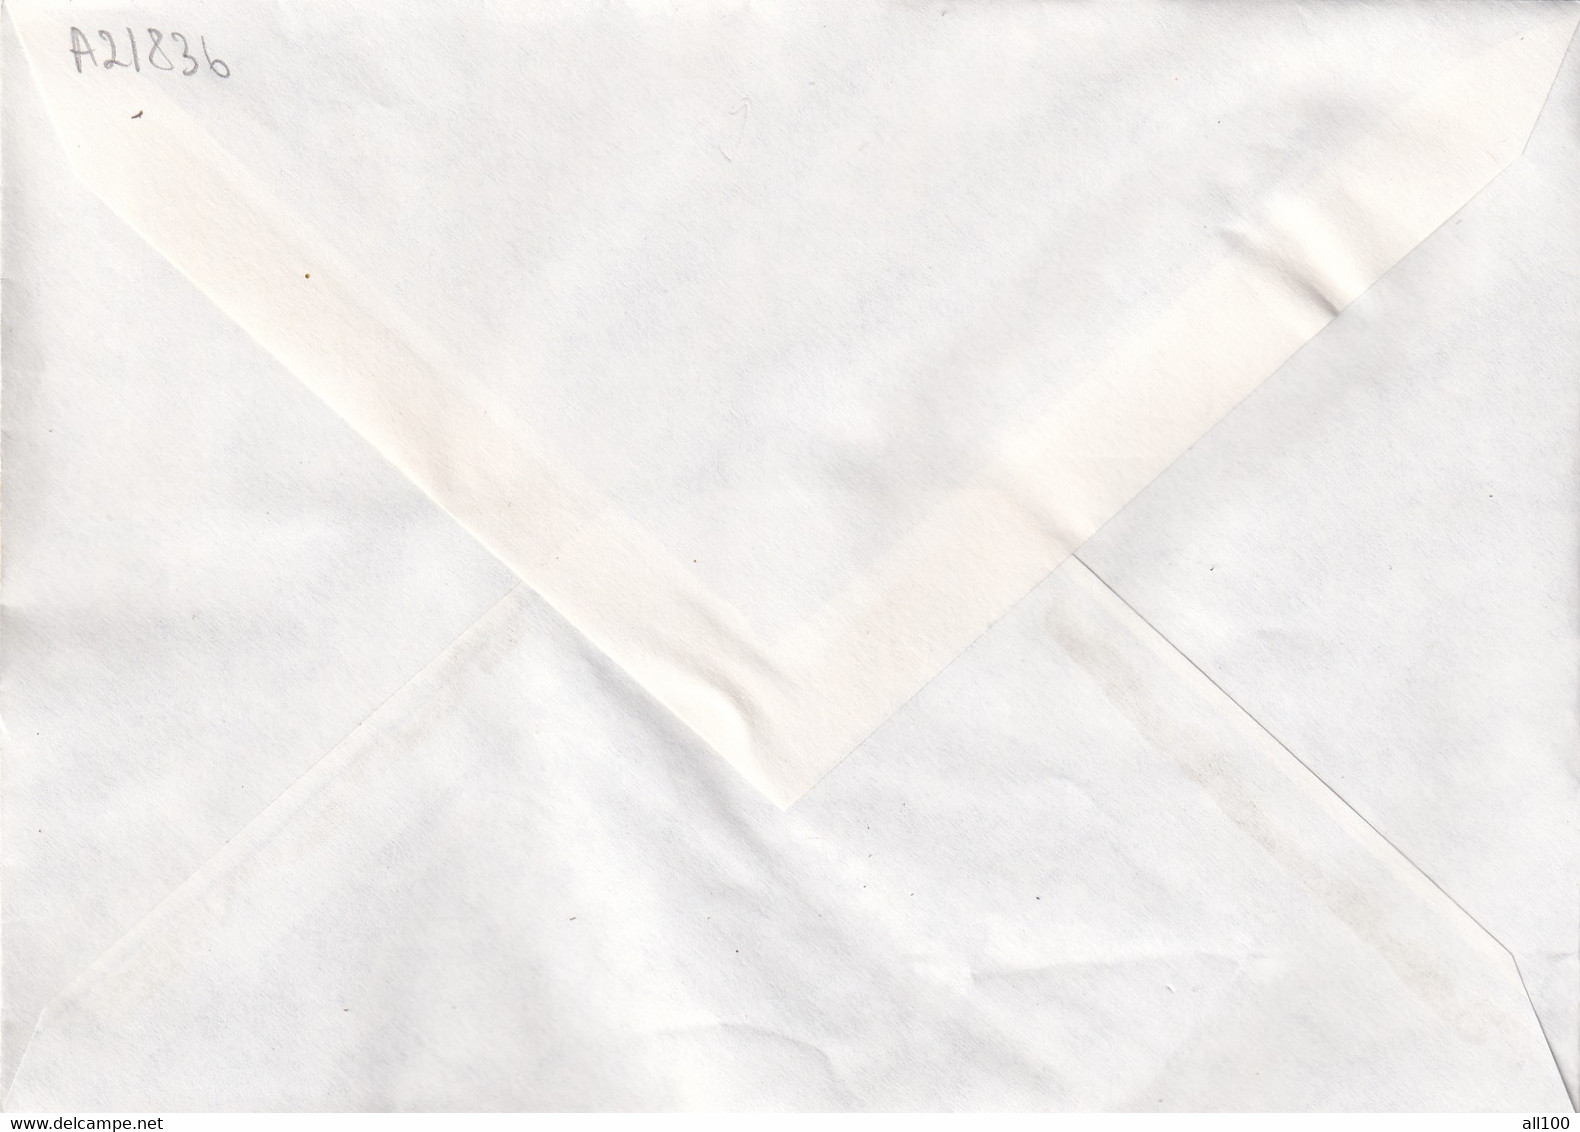 A21836 - Temple De Borobudur Premier Jour Paris Cover Envelope Unused 1979 France Stamp Buddhism - Budismo